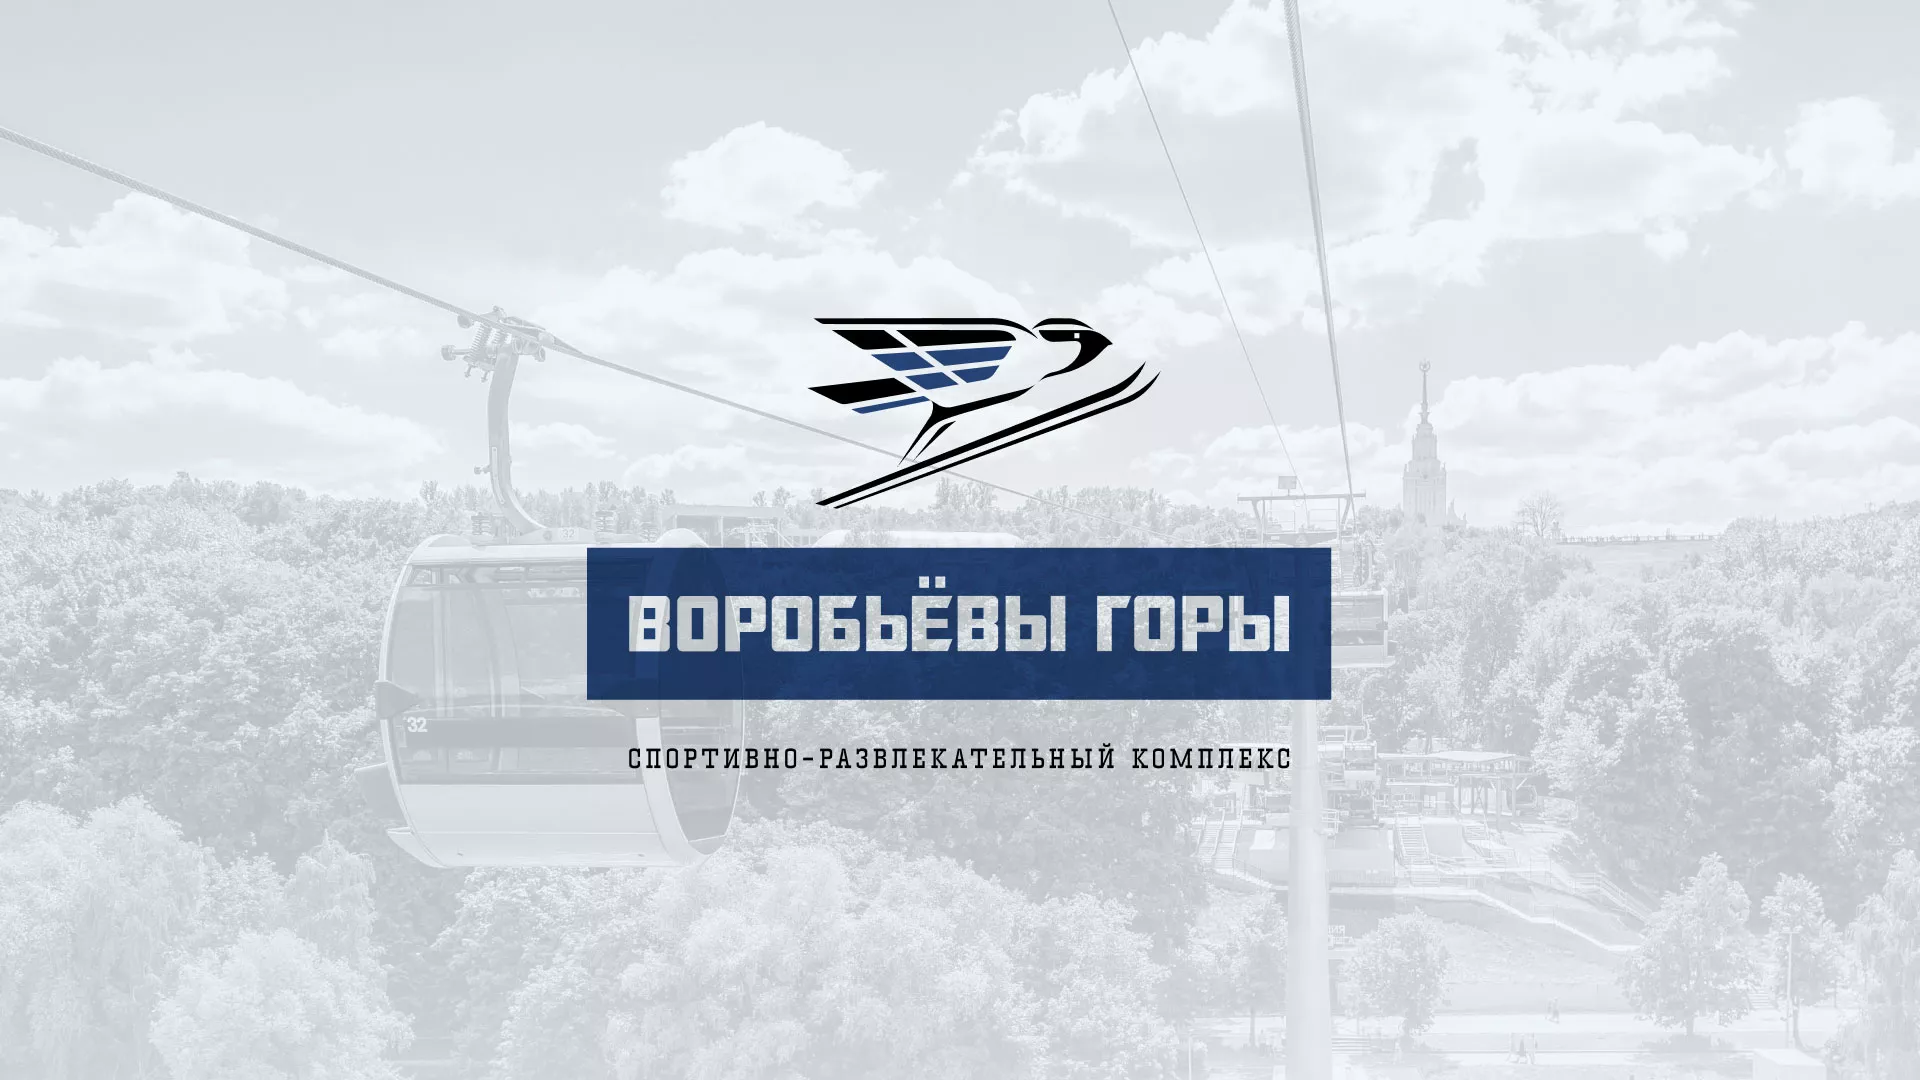 Разработка сайта в Вологде для спортивно-развлекательного комплекса «Воробьёвы горы»